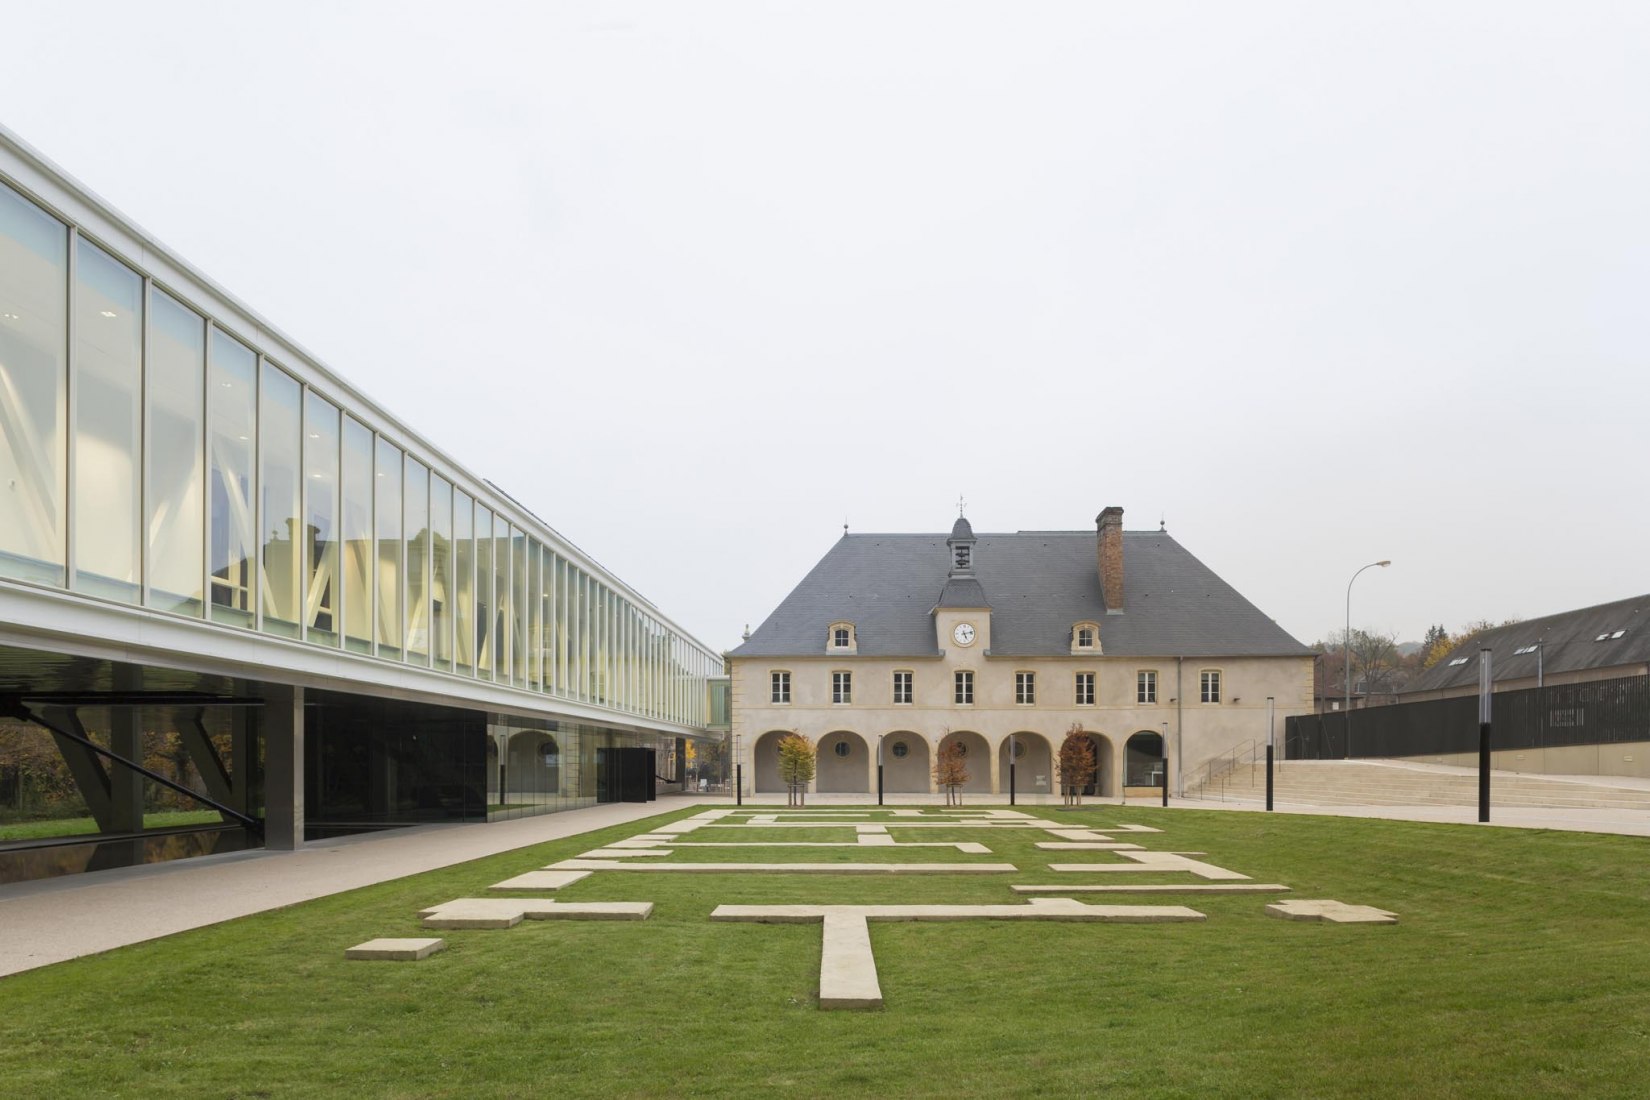 Transformación del castillo de Wendel en un centro cívico, Hayange, Moselle, arquitecto Pierre-Louis Faloci, 2014-2016. Fotografía por Daniel Osso